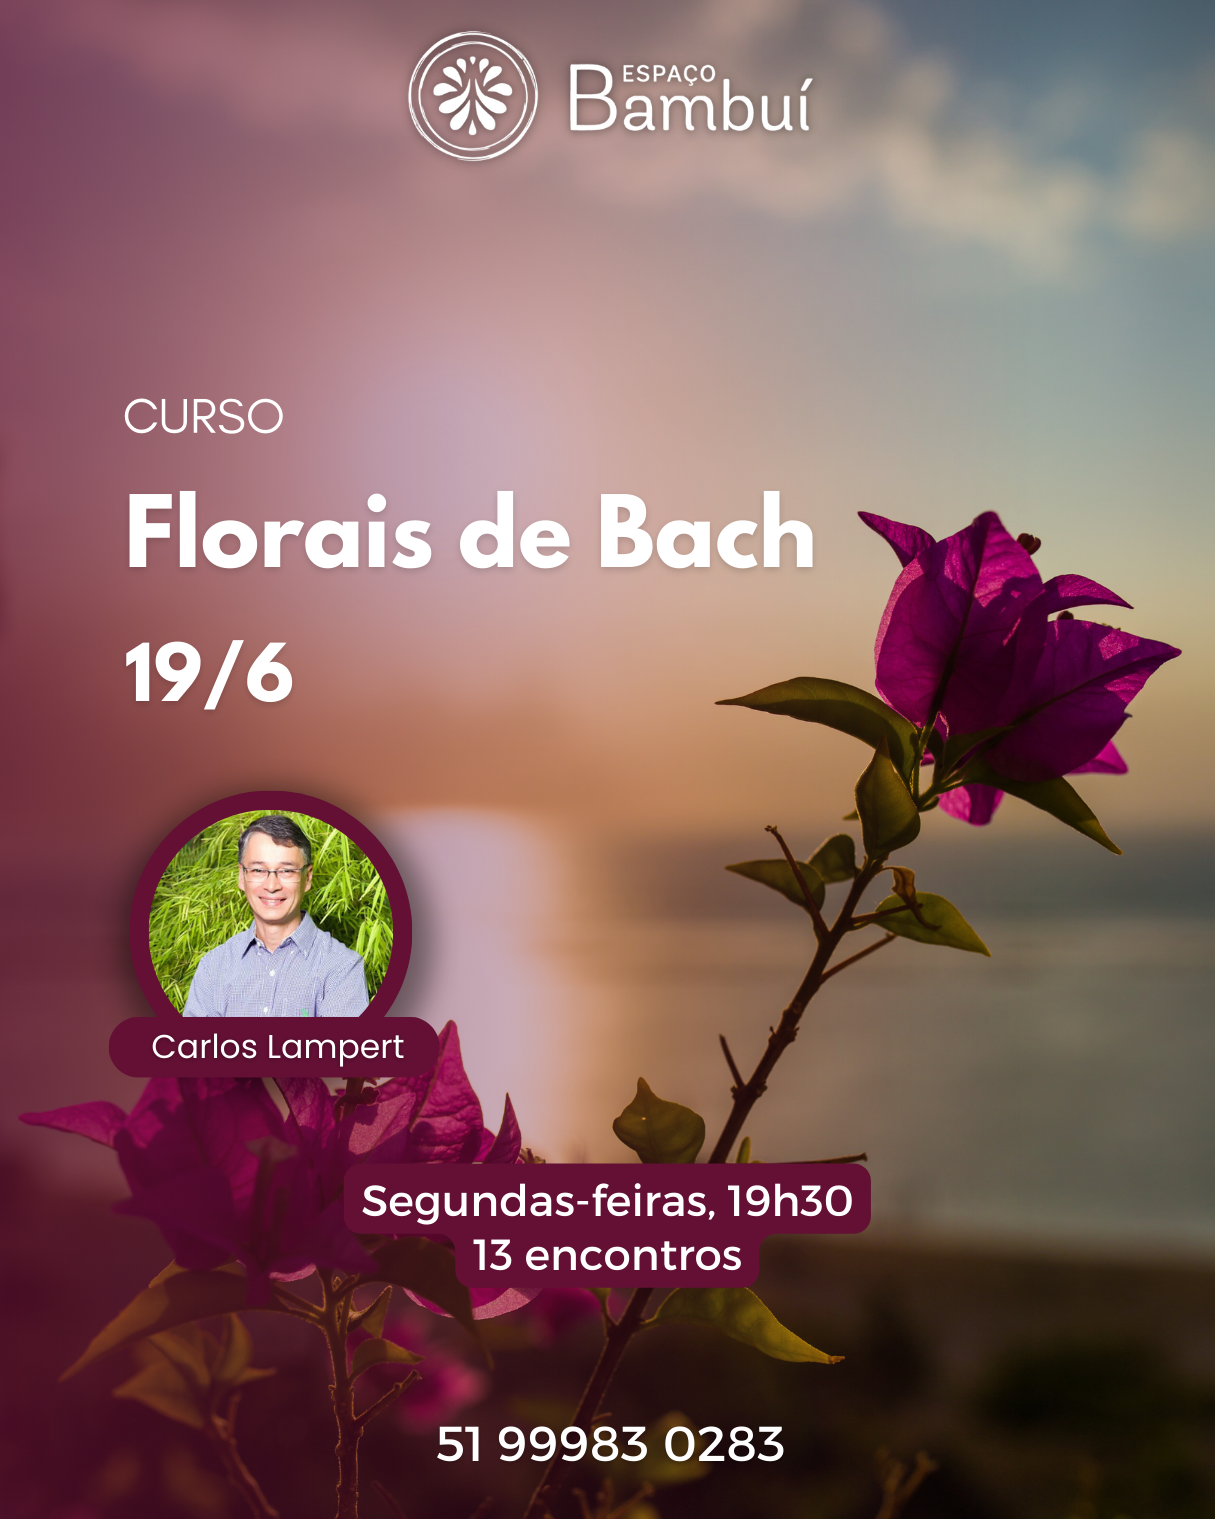 Curso de Florais de Bach em Canoas - 19/6 7